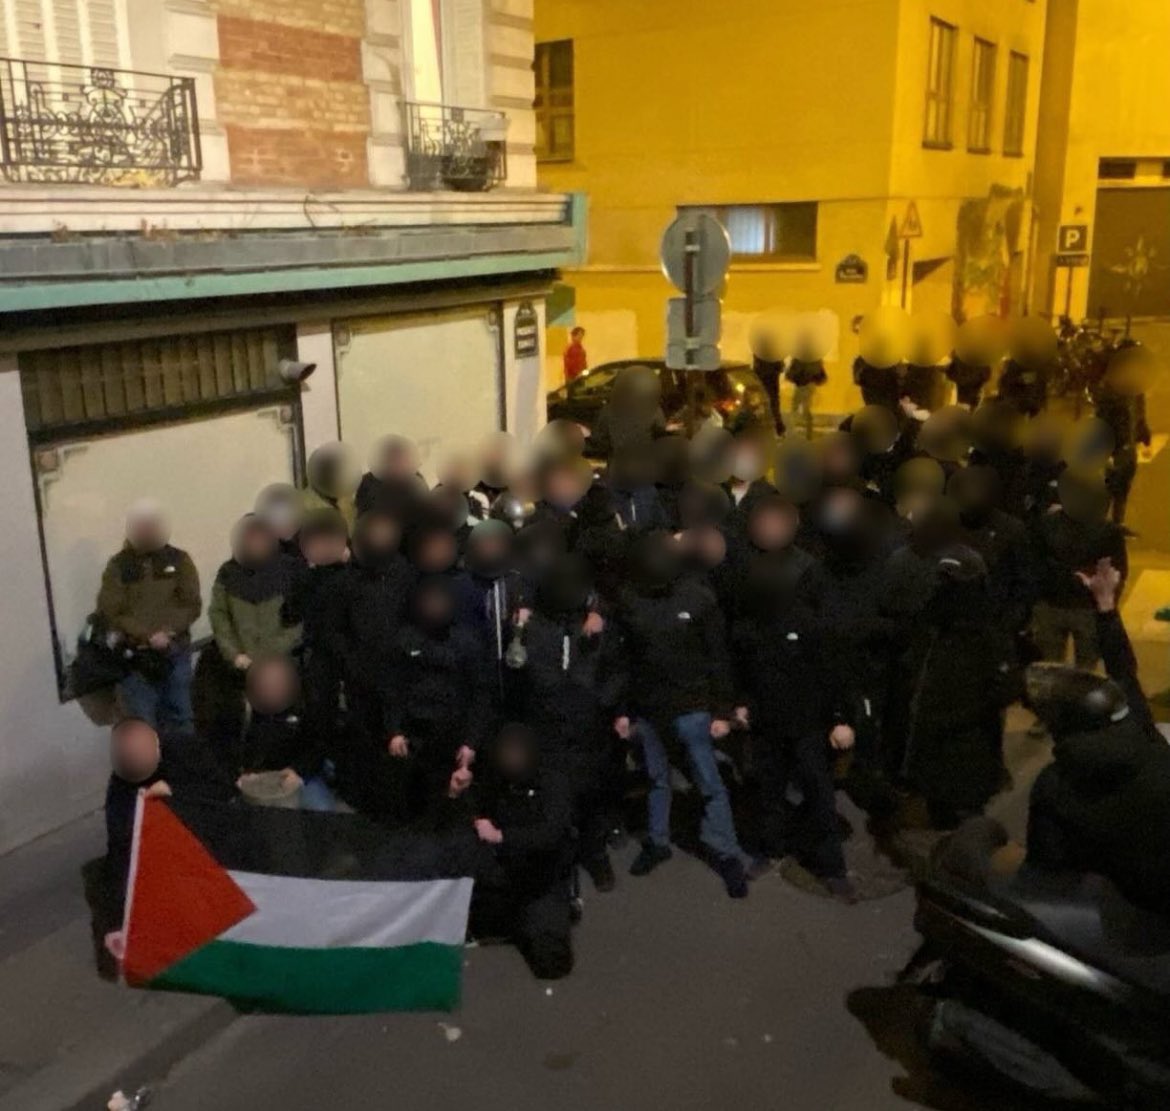 Le groupe Unité Juive, issu de l’organisation fasciste de la LDJ, a menacé d’attaquer une conférence sur les crimes sionistes en Palestine, en taguant « à ce soir » sur les murs du CICP. La jeunesse antifasciste parisienne s’est mobilisée, ils ne sont jamais venus.